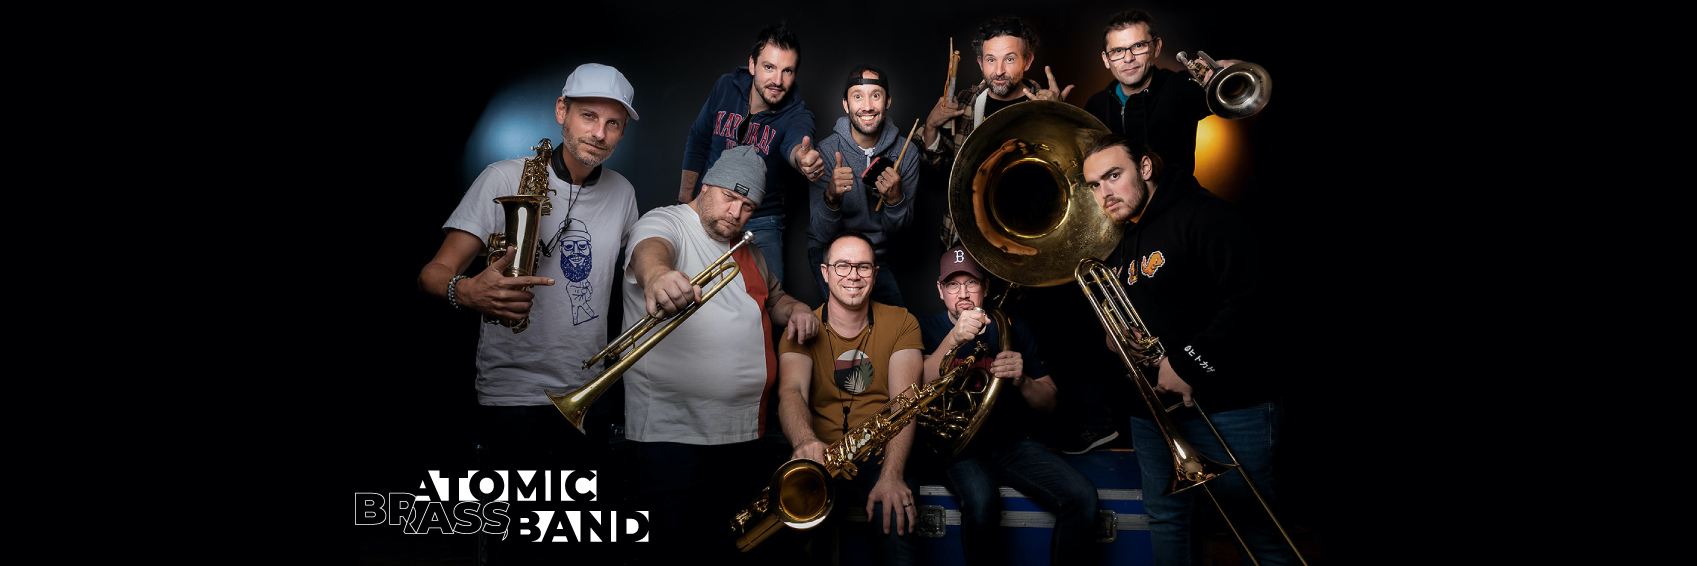 Atomic Brass Band, groupe de musique Jazz en représentation à Vendée - photo de couverture n° 1